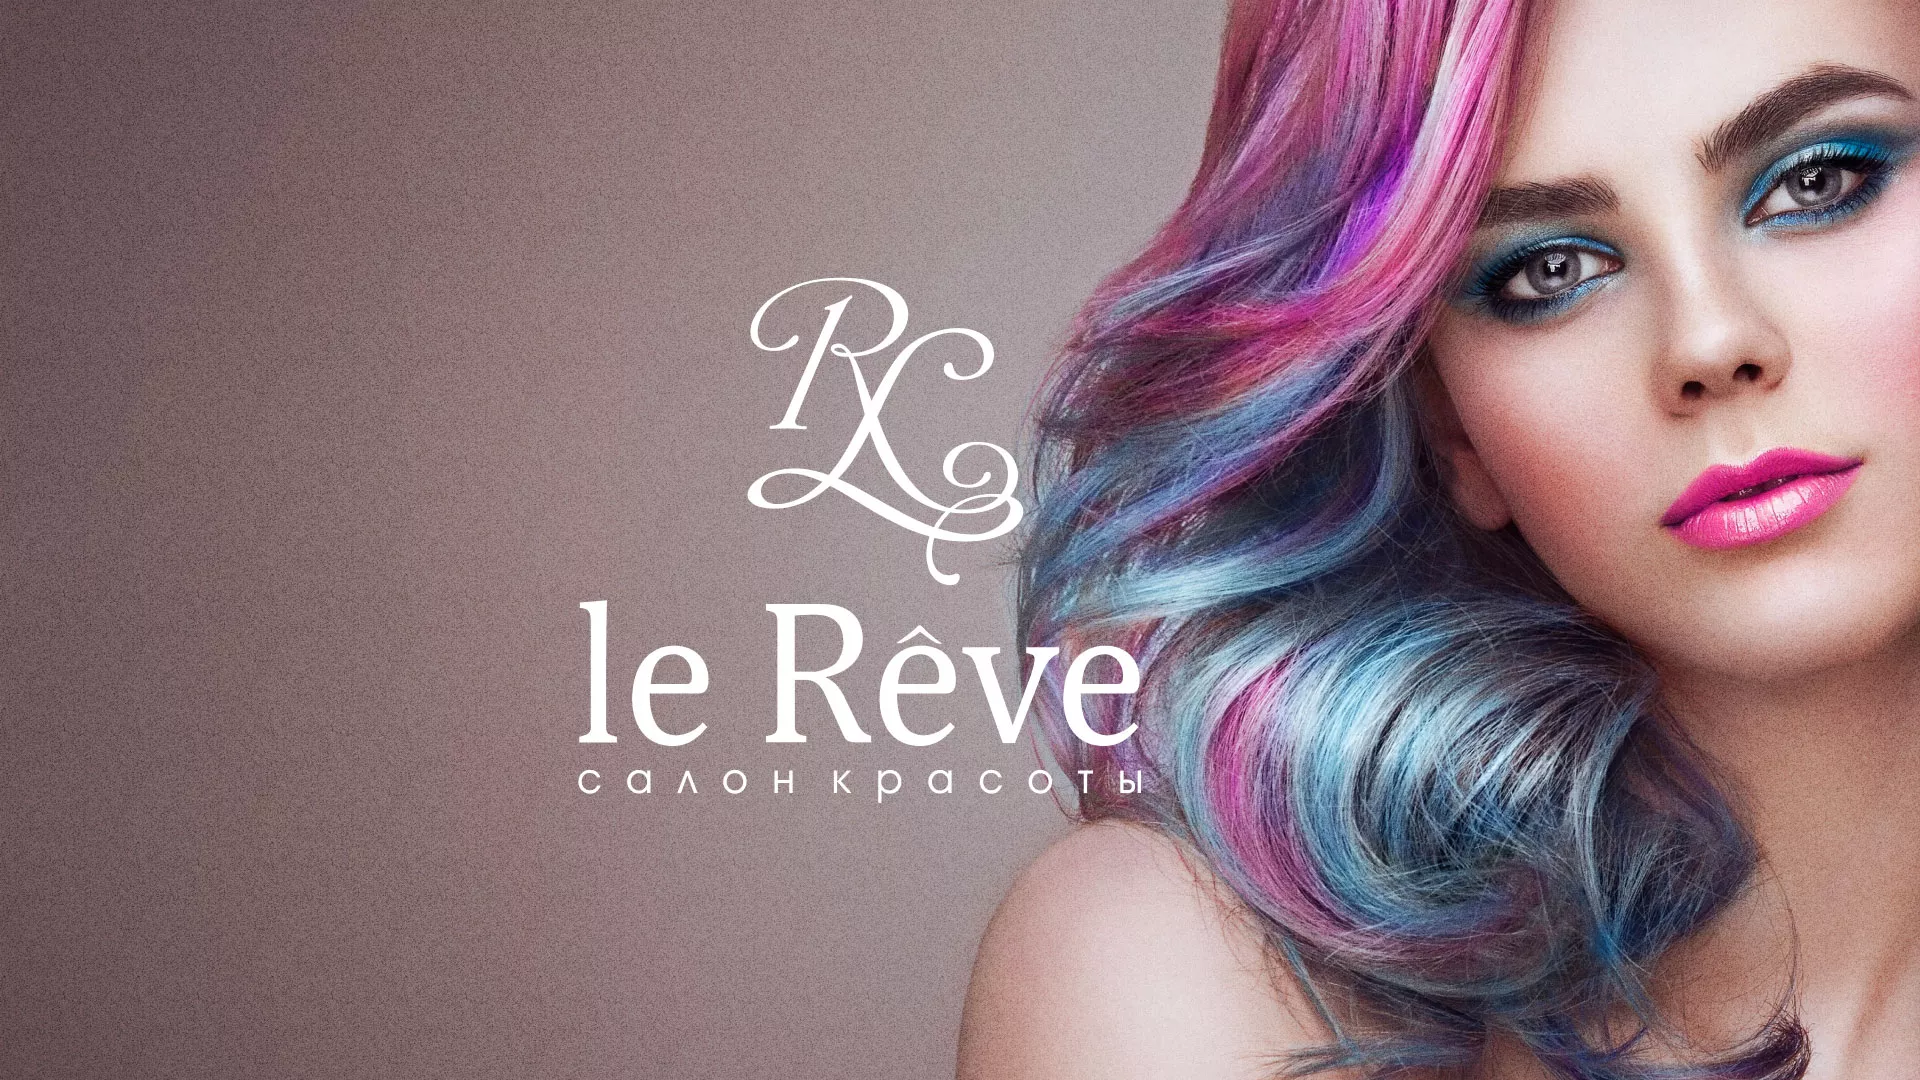 Создание сайта для салона красоты «Le Reve» в Андреаполе